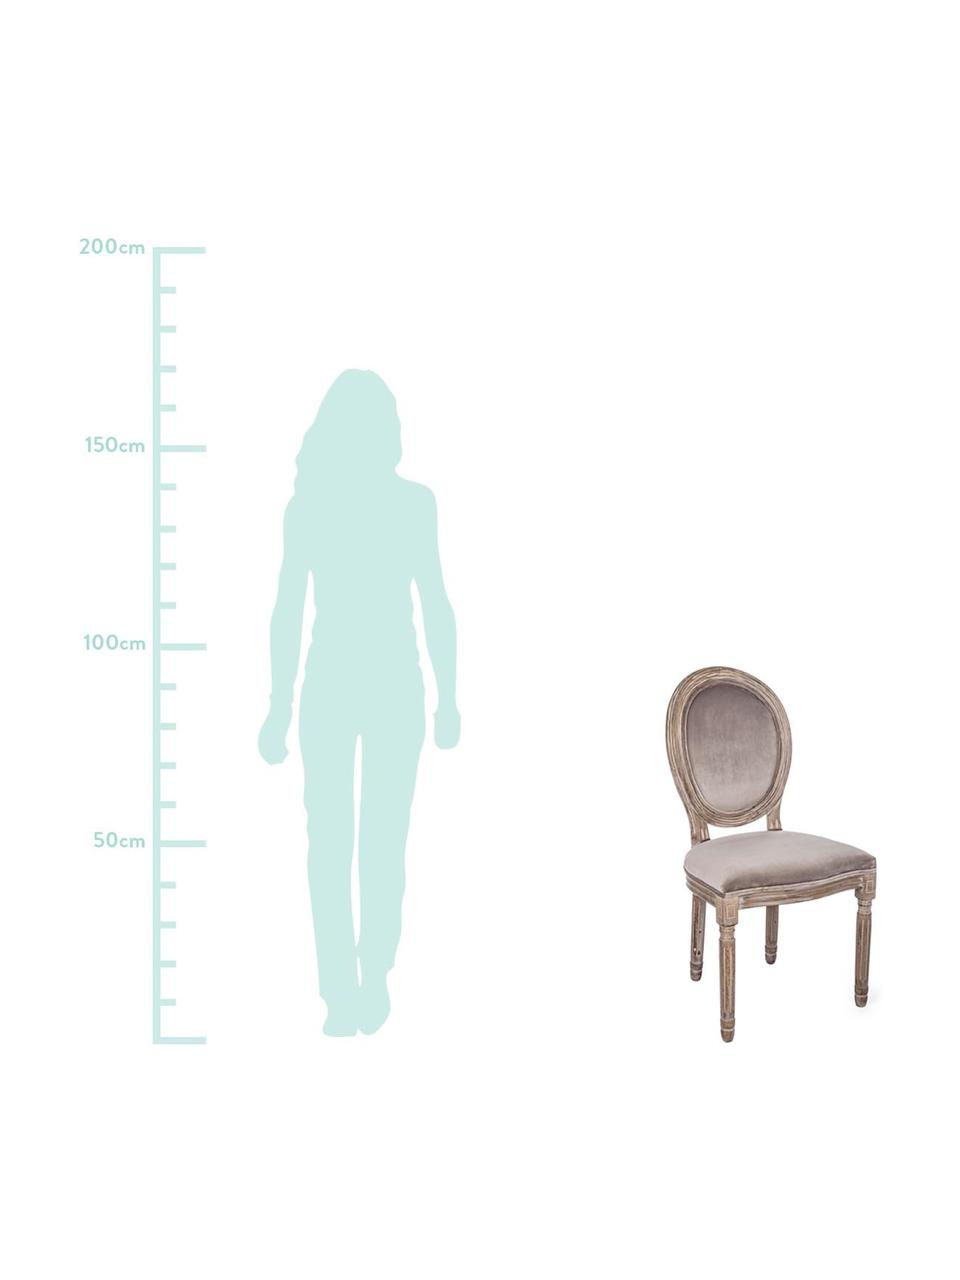 Fluwelen stoelen Mathilde, 2 stuks, Bekleding: 100% polyester fluweel, Frame: berkenhout, gecoat met ni, Bekleding: grijsbruin. Frame: berkenhoutkleurig met antieke afwerking, B 48 x D 46 cm